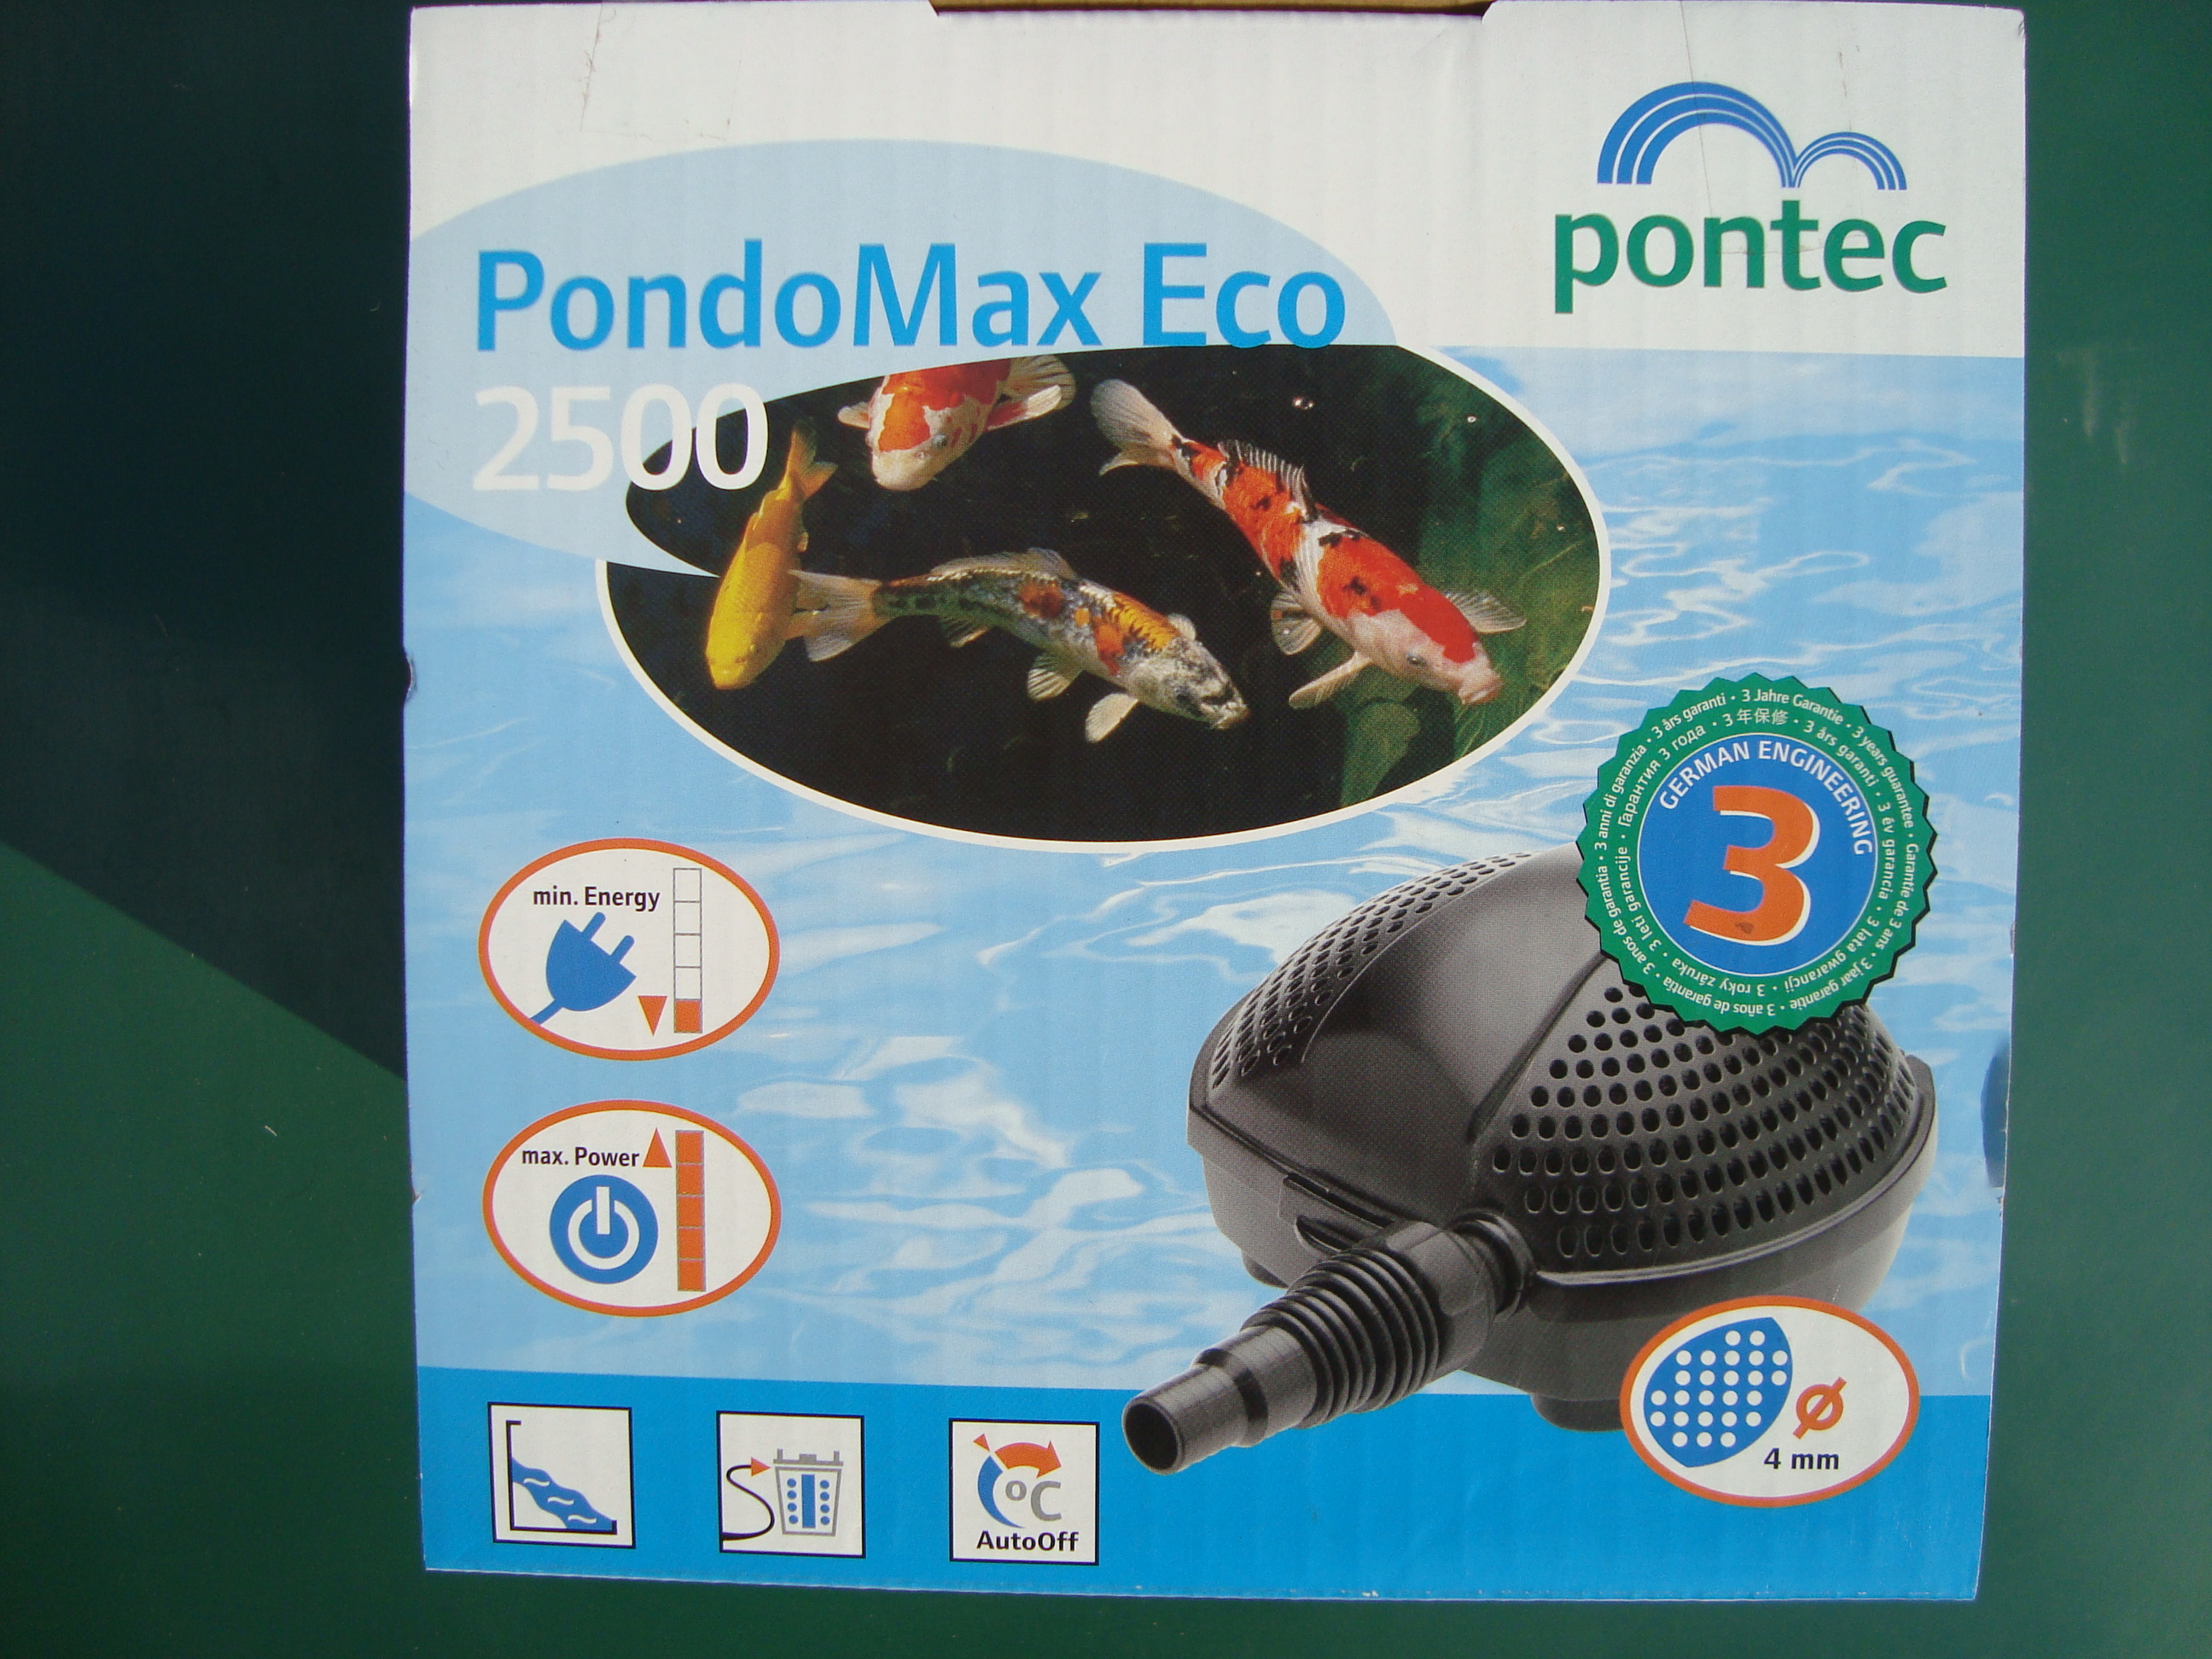 Jazierkové č. Pontec Pondomax Eco 2500 cena 64€